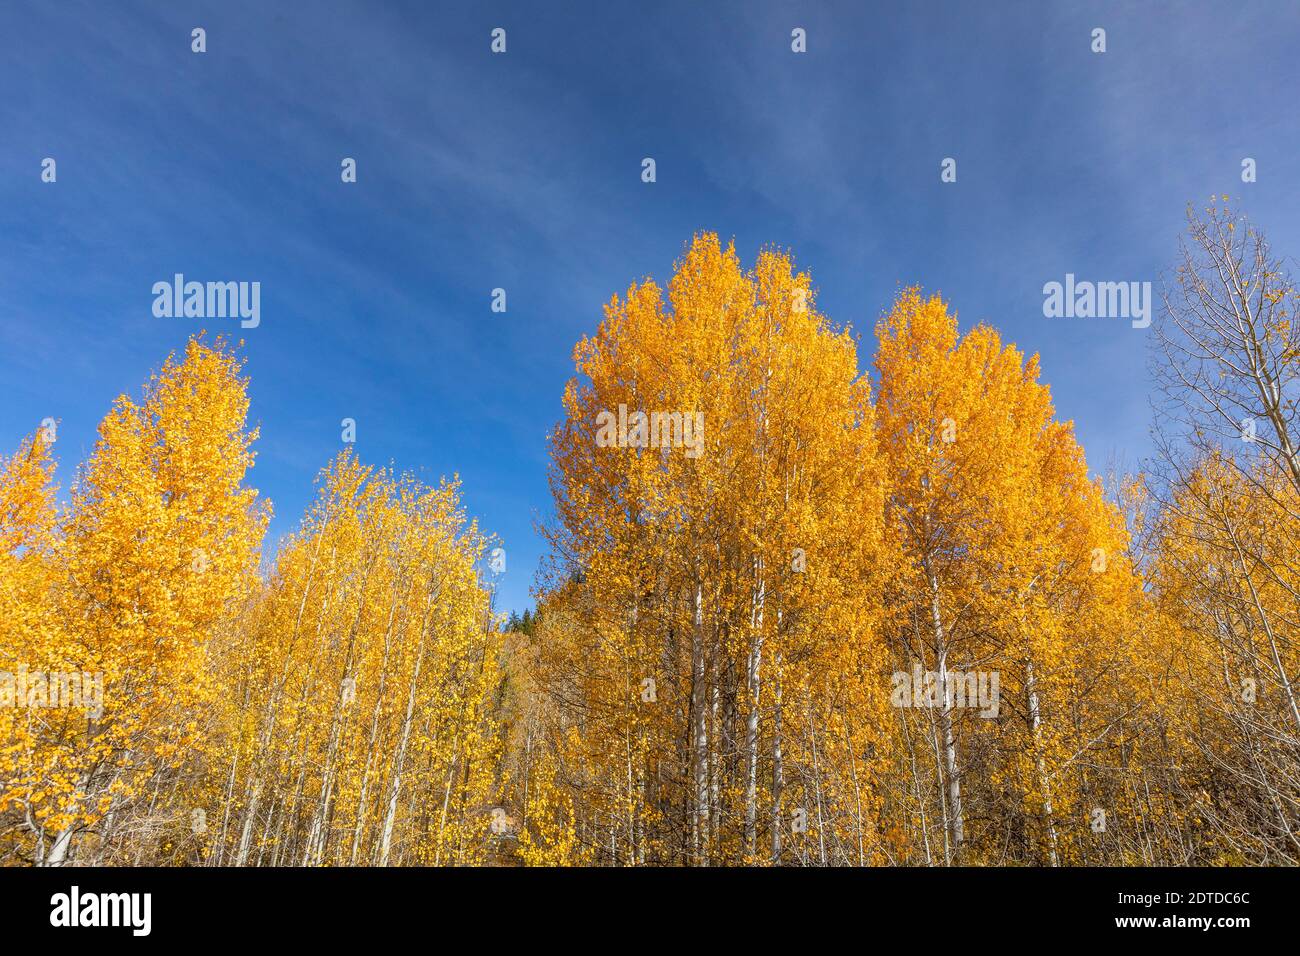 États-Unis, Idaho, Sun Valley, arbres jaunes dans la forêt d'automne Banque D'Images